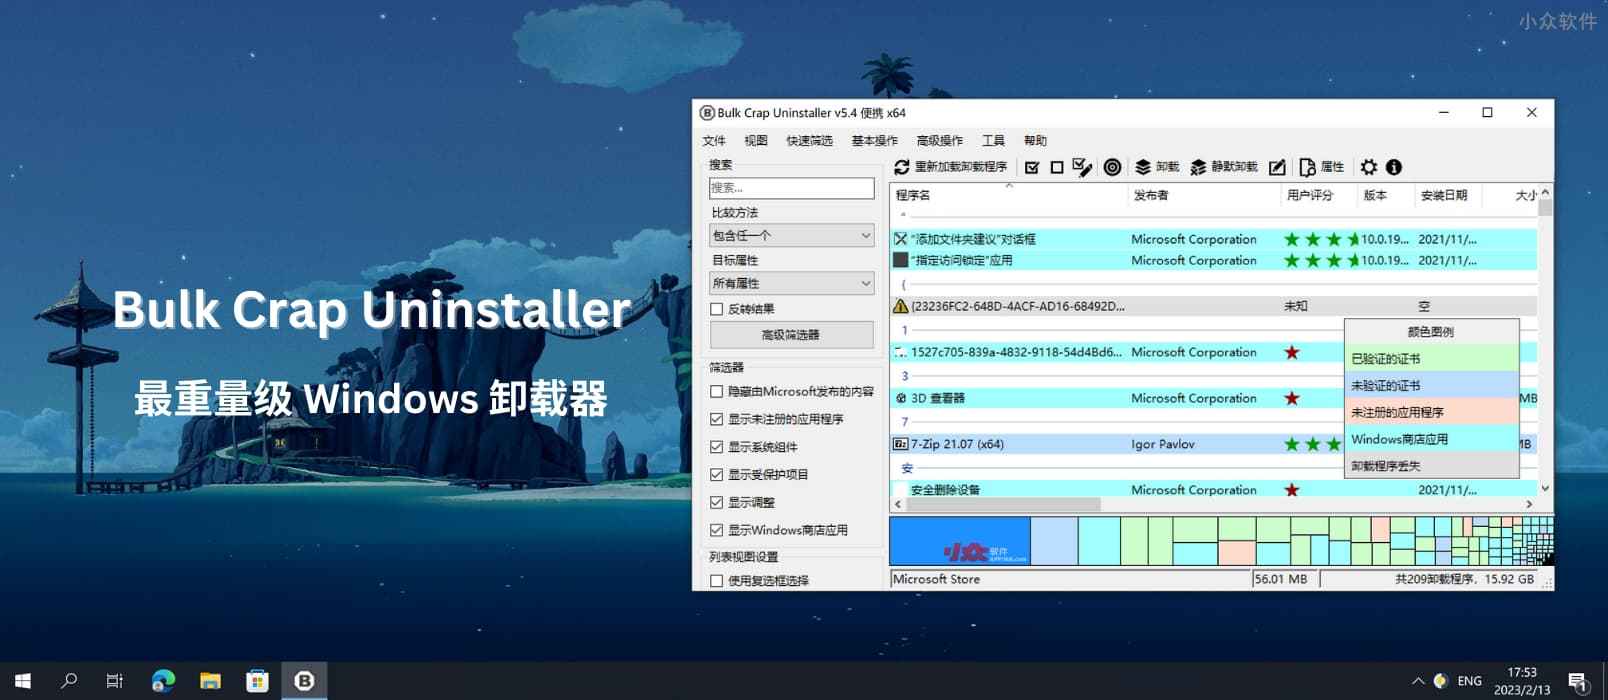 Bulk Crap Uninstaller – 最重量级卸载器，能扫便携软件、游戏，速度又快，免费开源[Windows]